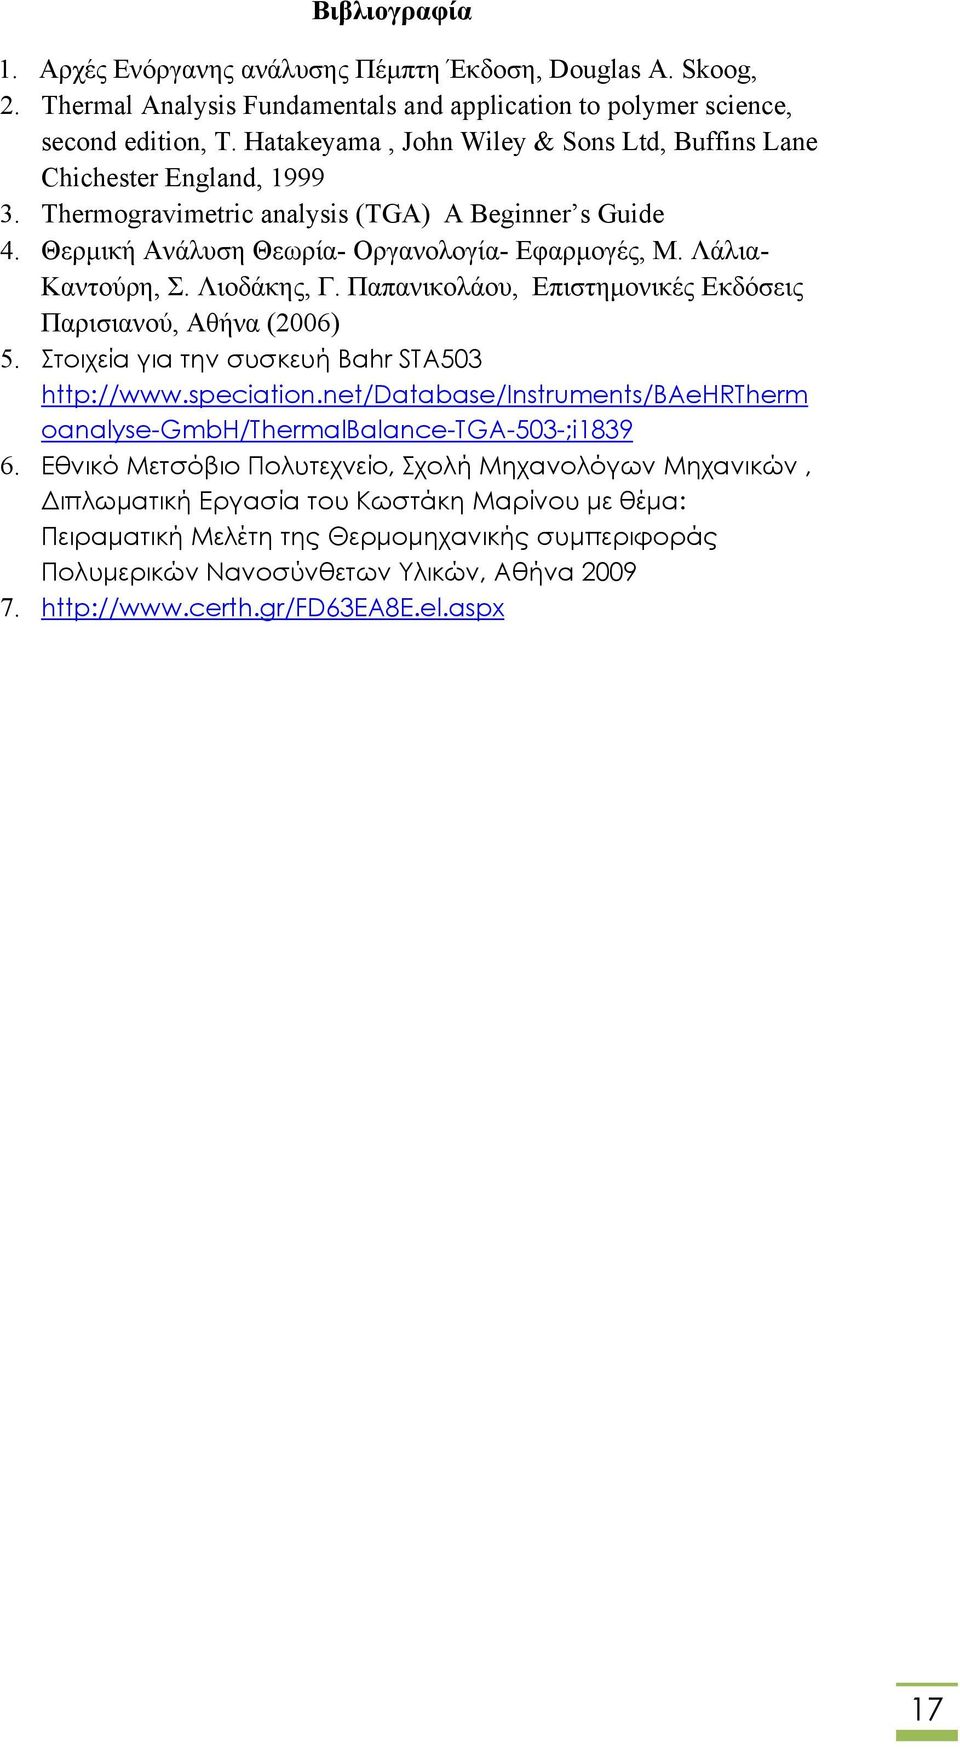 Λάλια- Καντούρη, Σ. Λιοδάκης, Γ. Παπανικολάου, Επιστημονικές Εκδόσεις Παρισιανού, Αθήνα (2006) 5. Στοιχεία για την συσκευή Bahr STA503 http://www.speciation.